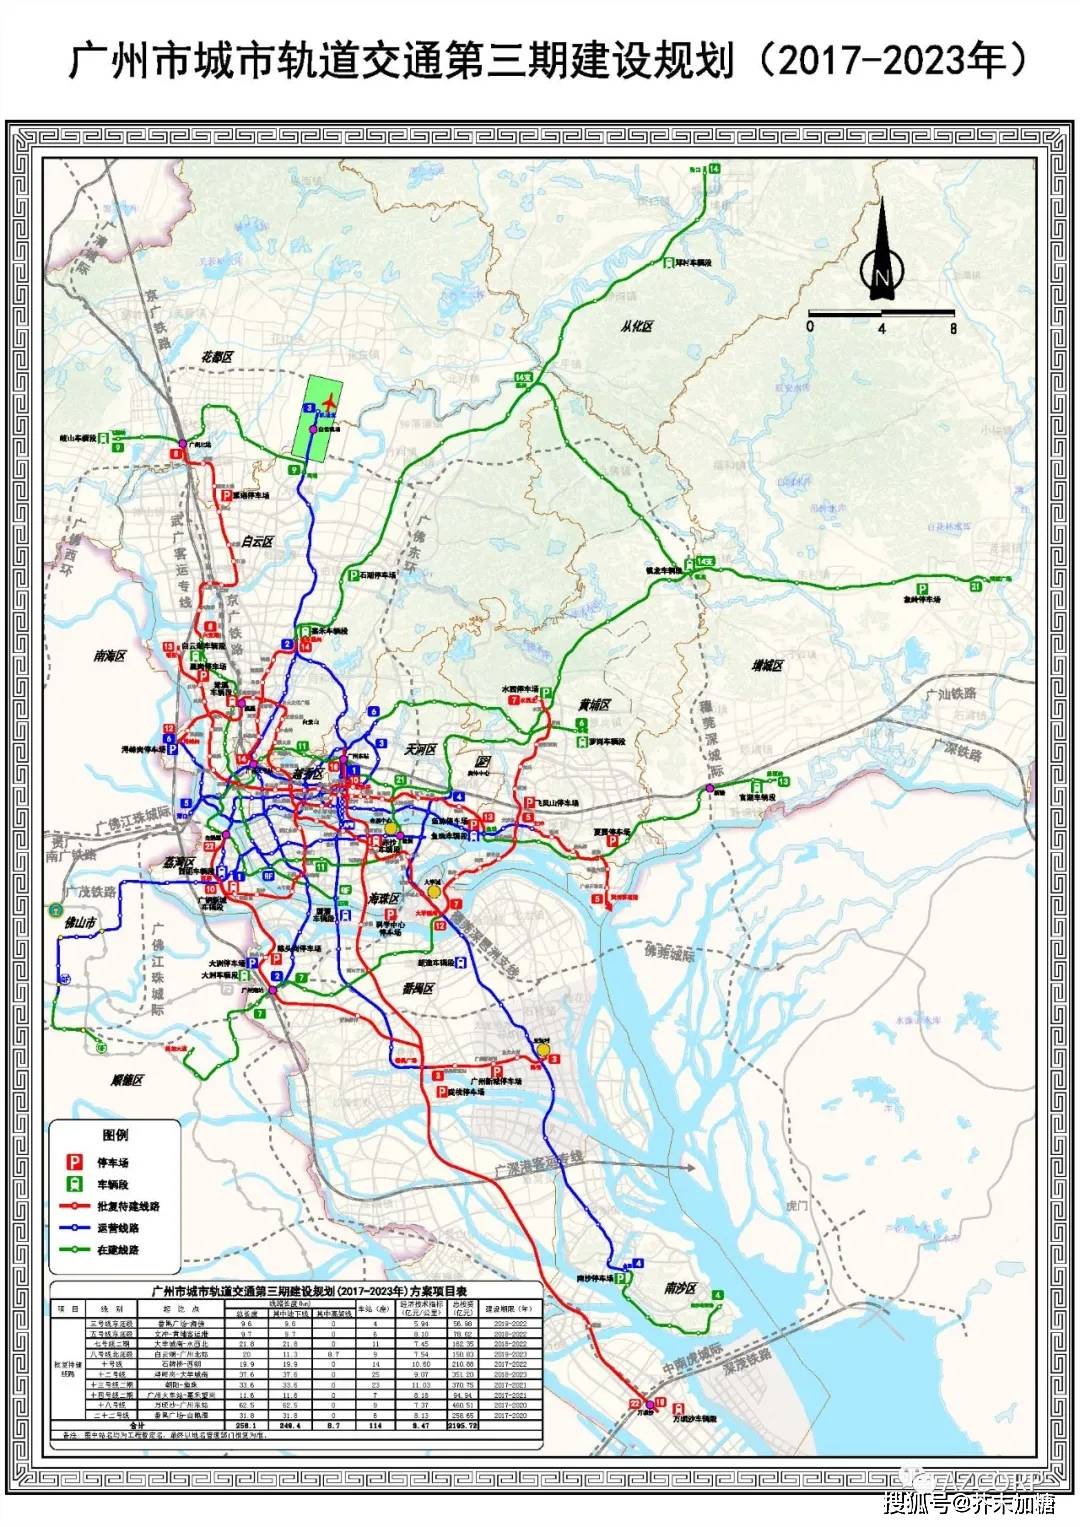 广州地铁规划图2030版图片